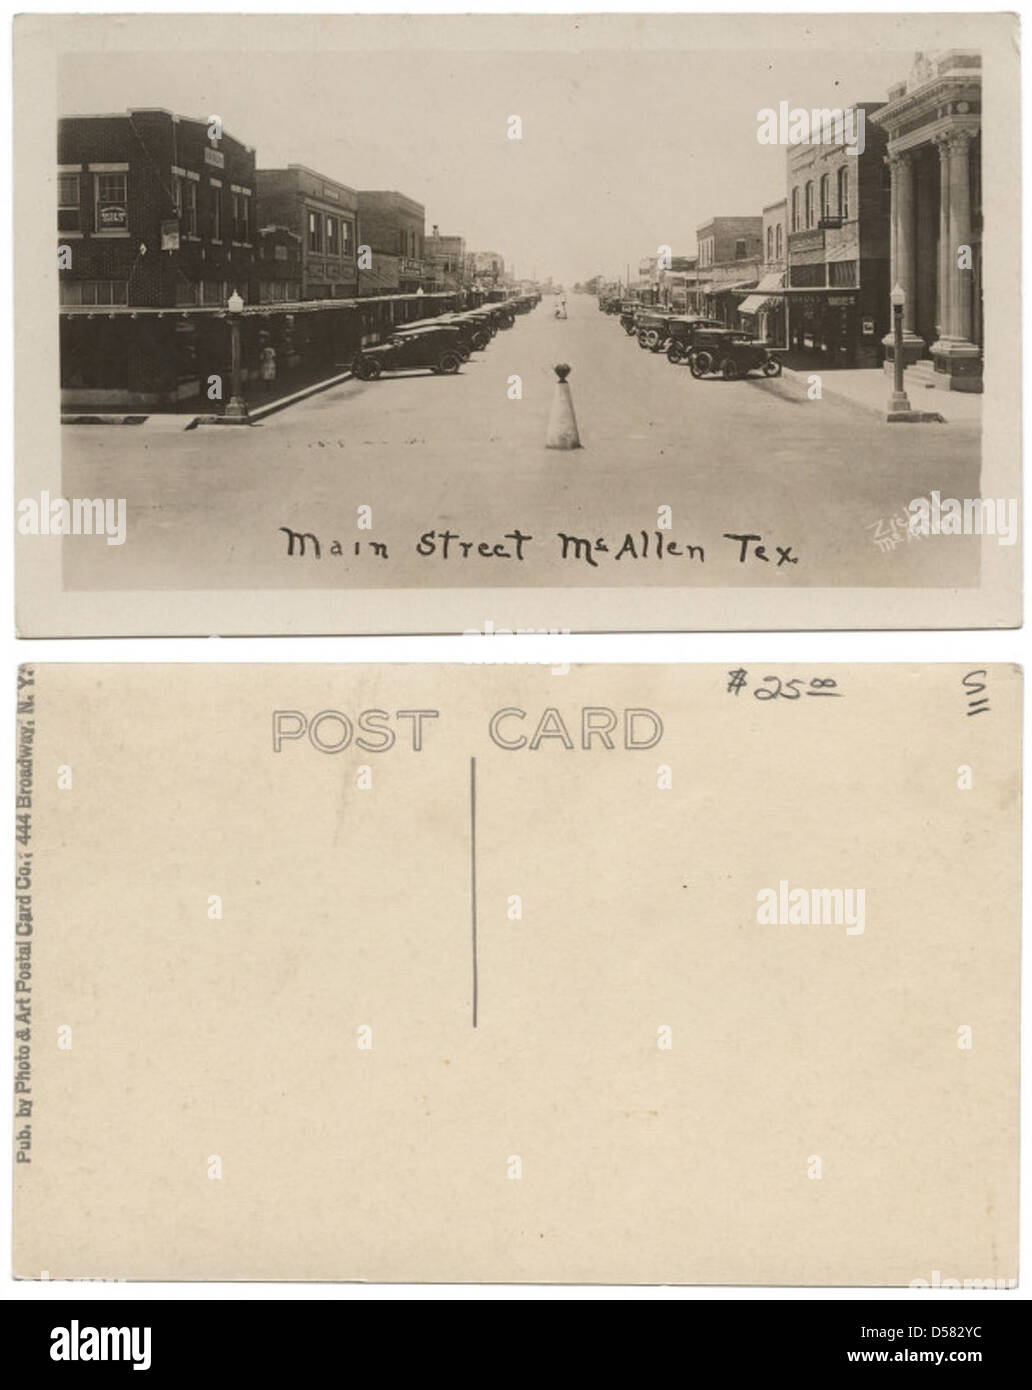 Main Street, McAllen, Tex. Stock Photo